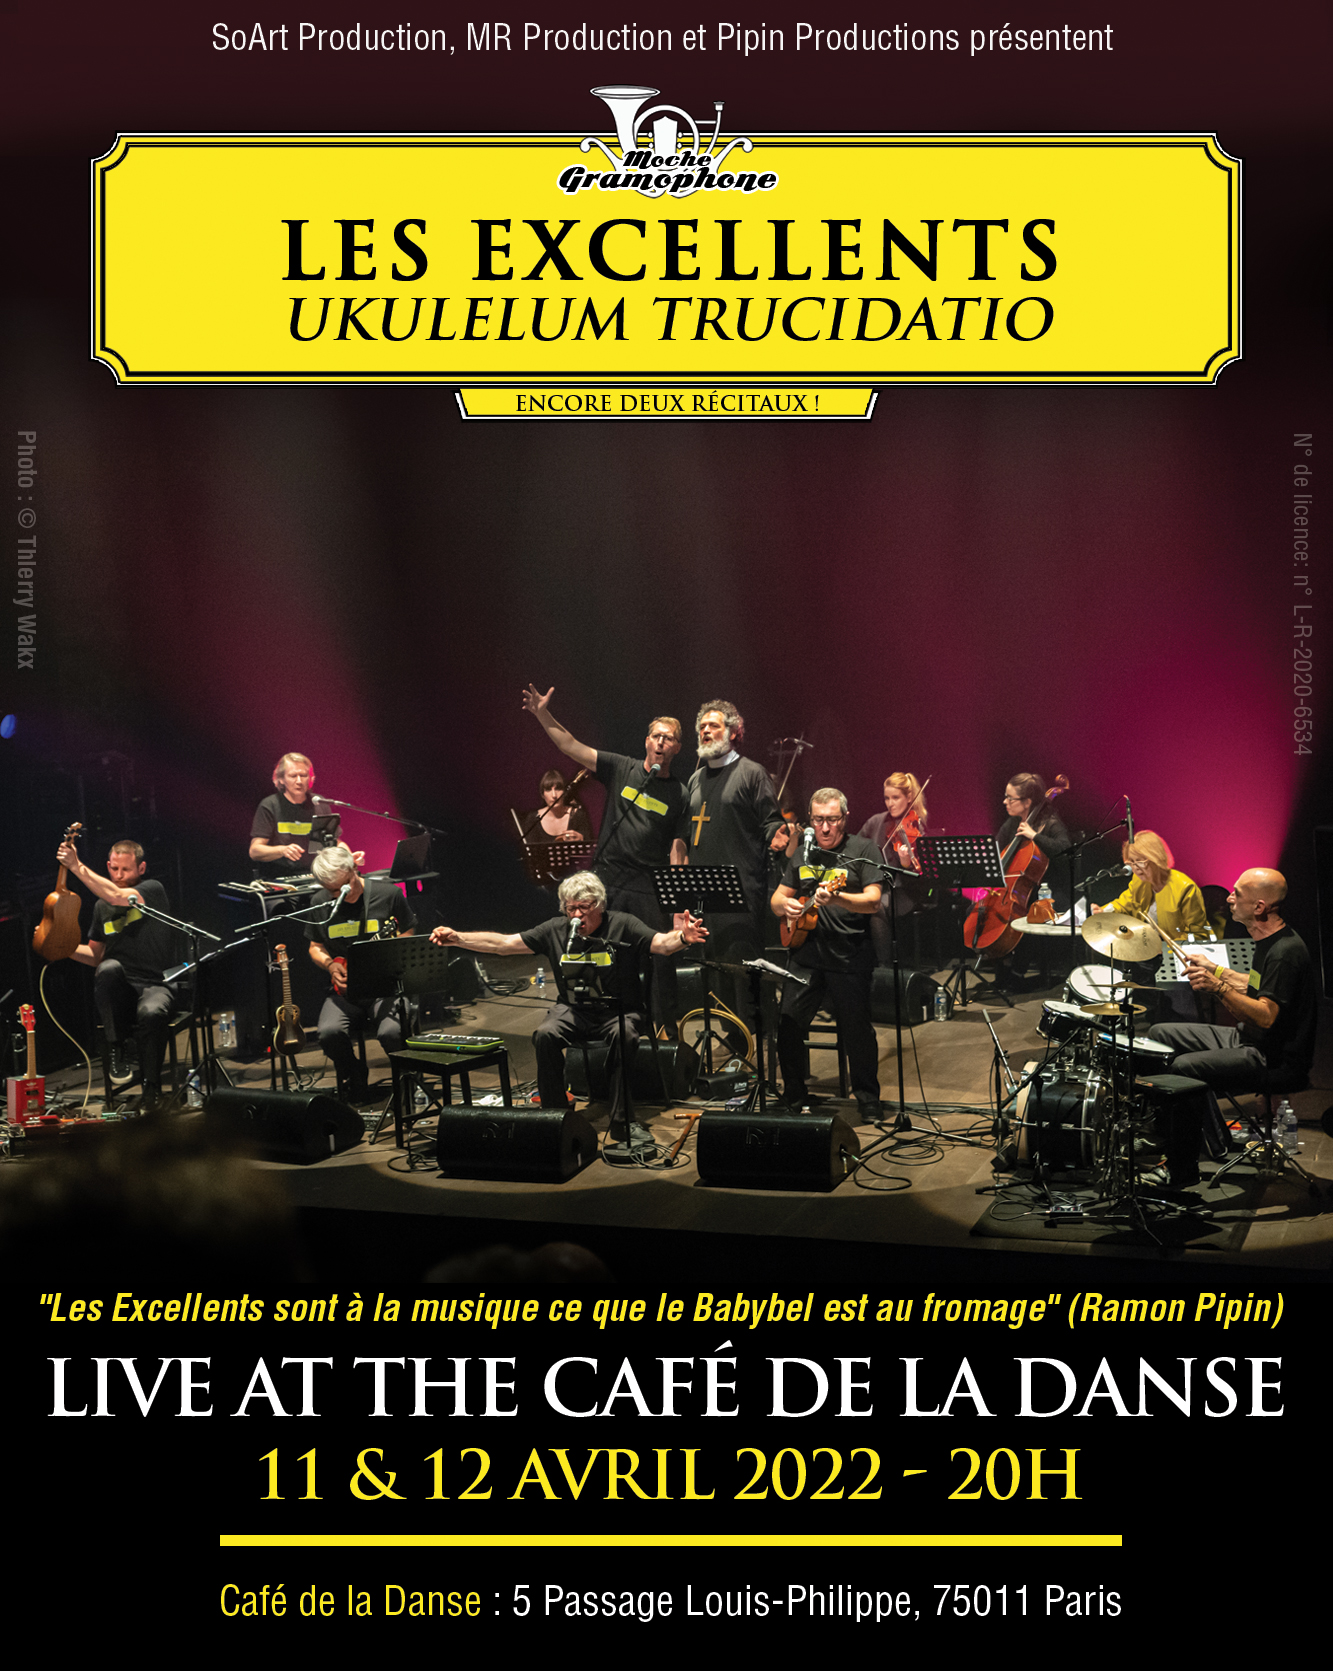  Les Excellents dans Ukulelum Trucidato Café de la Danse, Paris 